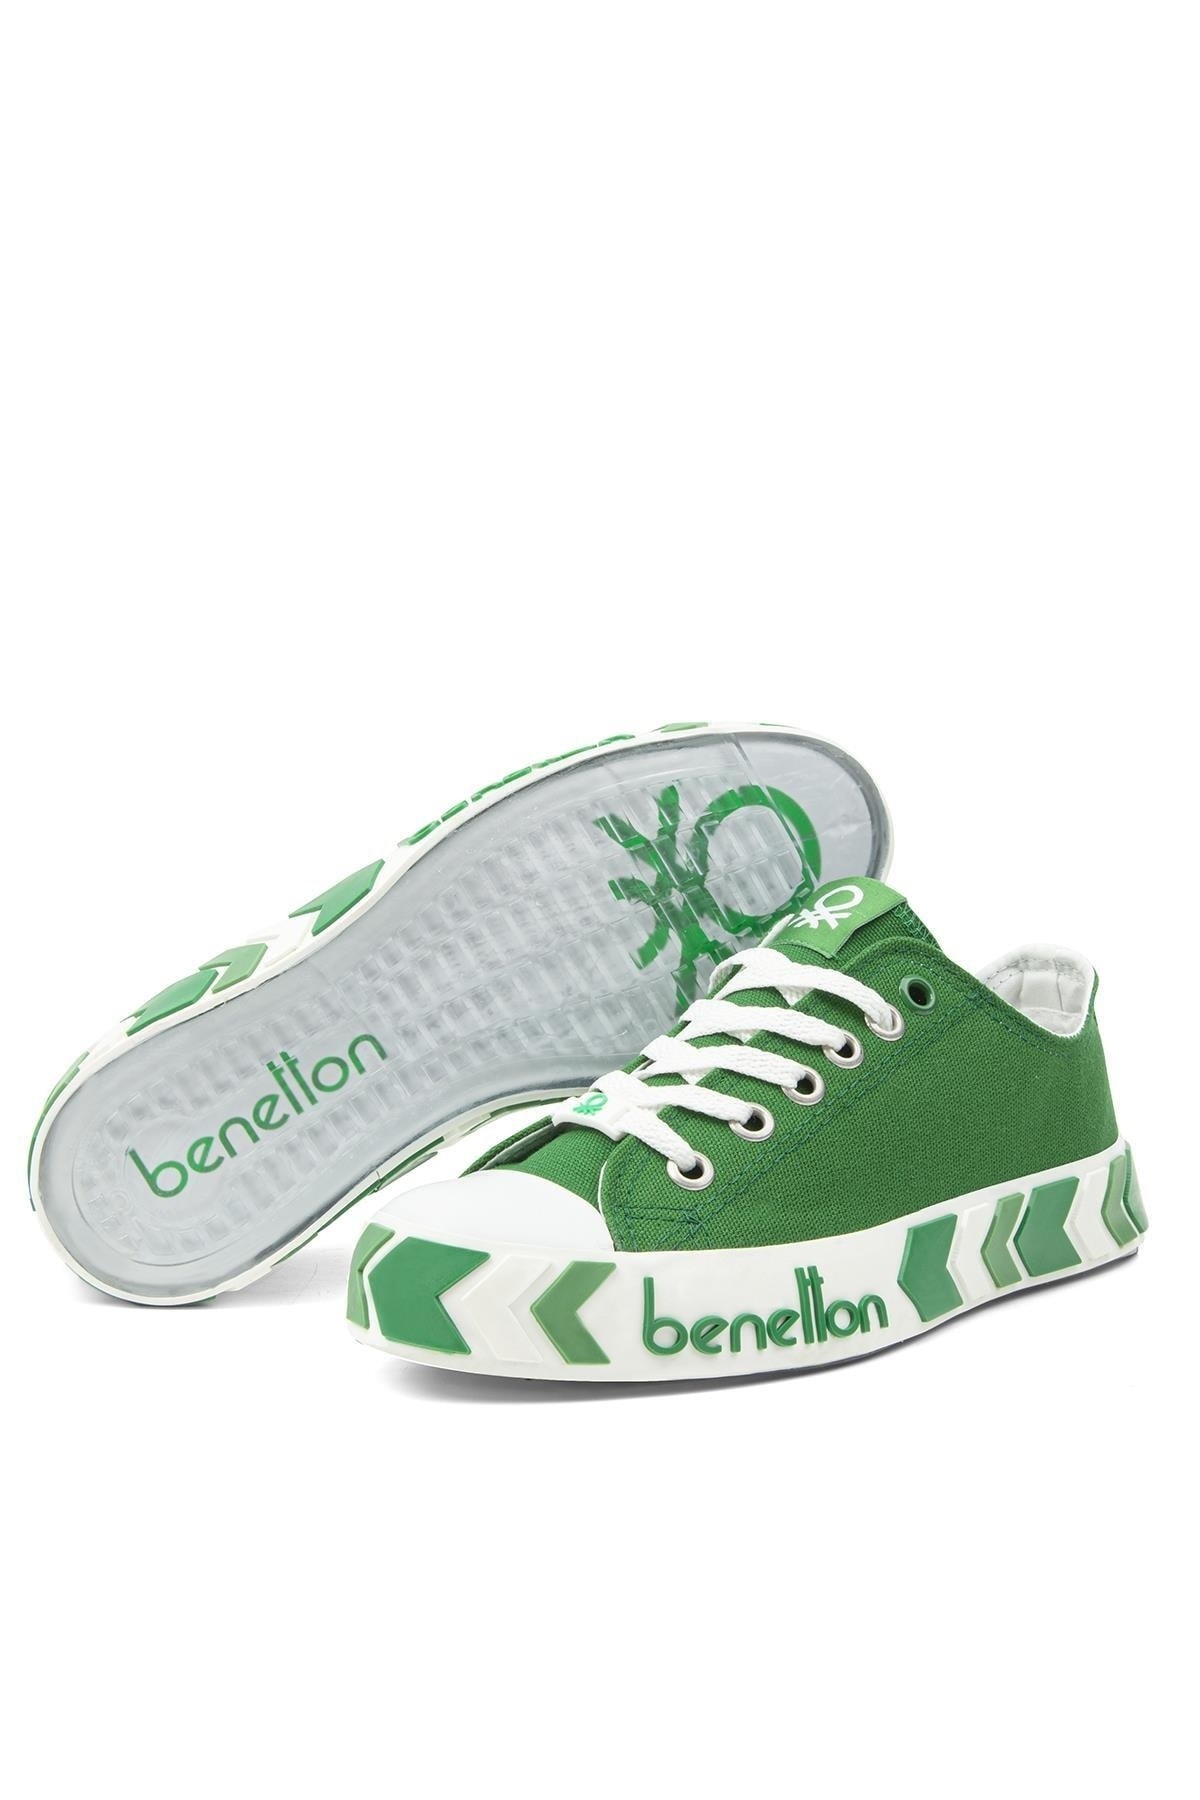 Benetton Kadın Ayakkabı BN-30620 91-Yesil